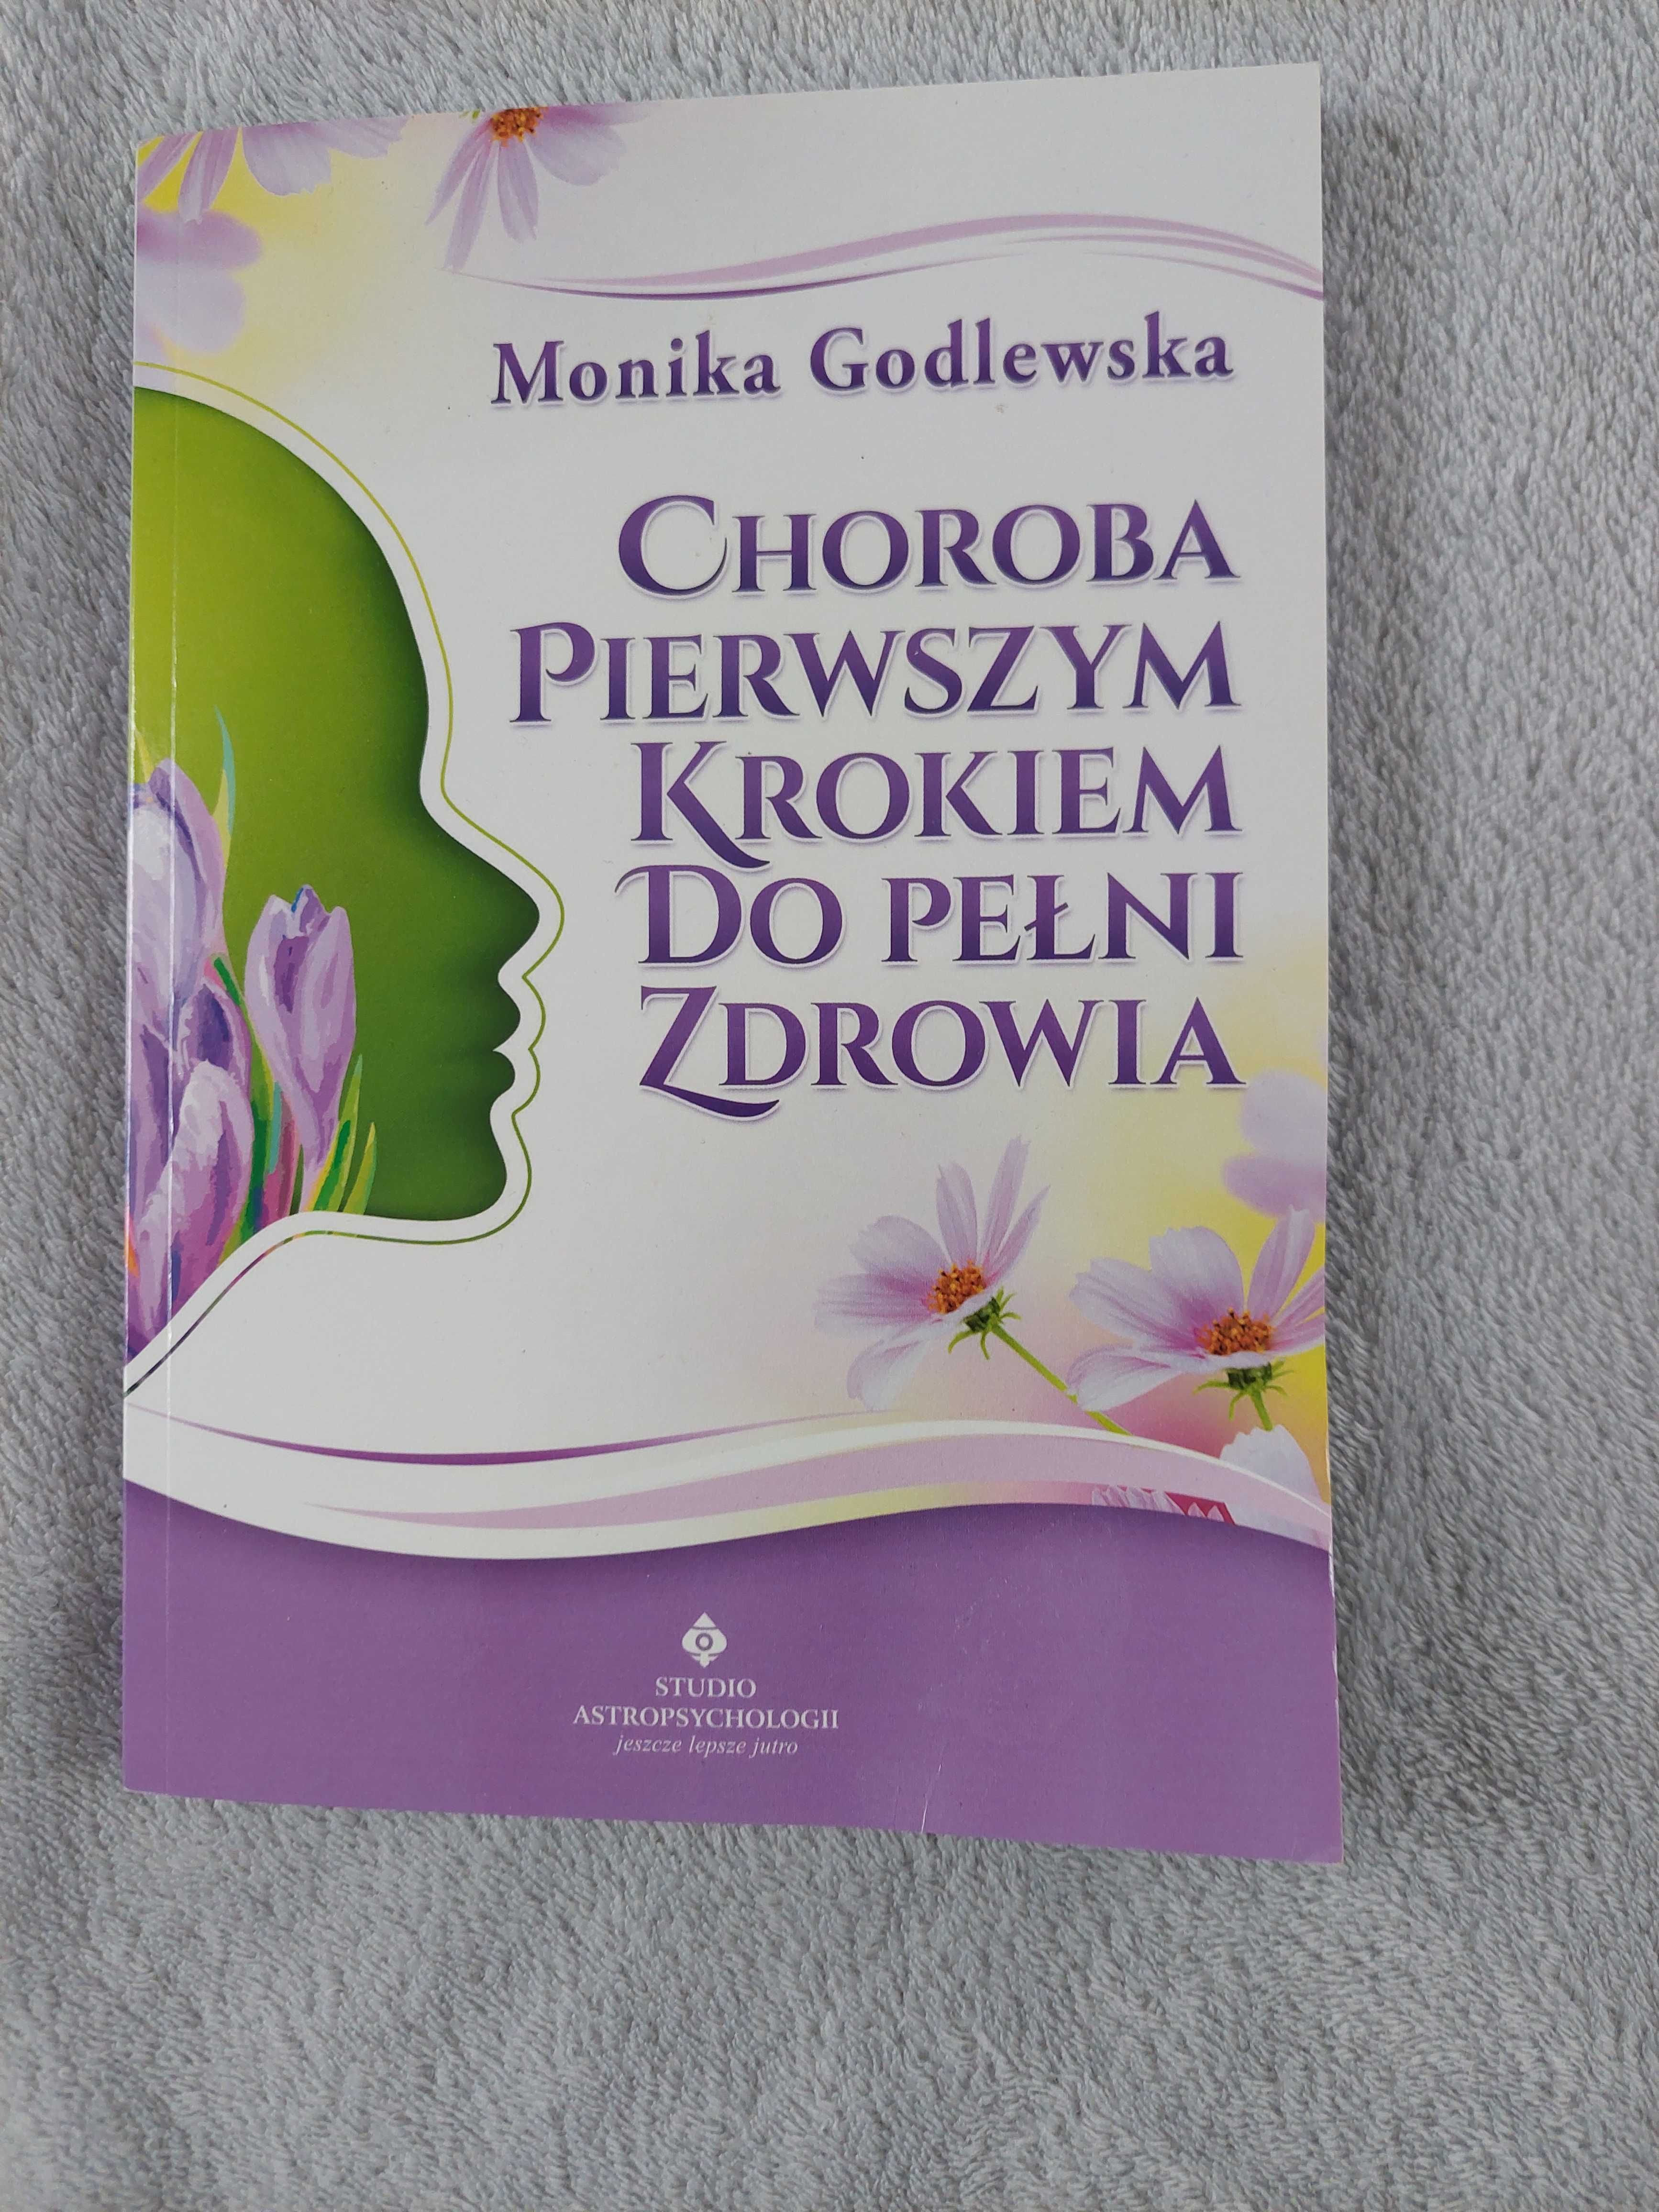 M. Godlewska, Choroba pierwszym krokiem do pełni zdrowia